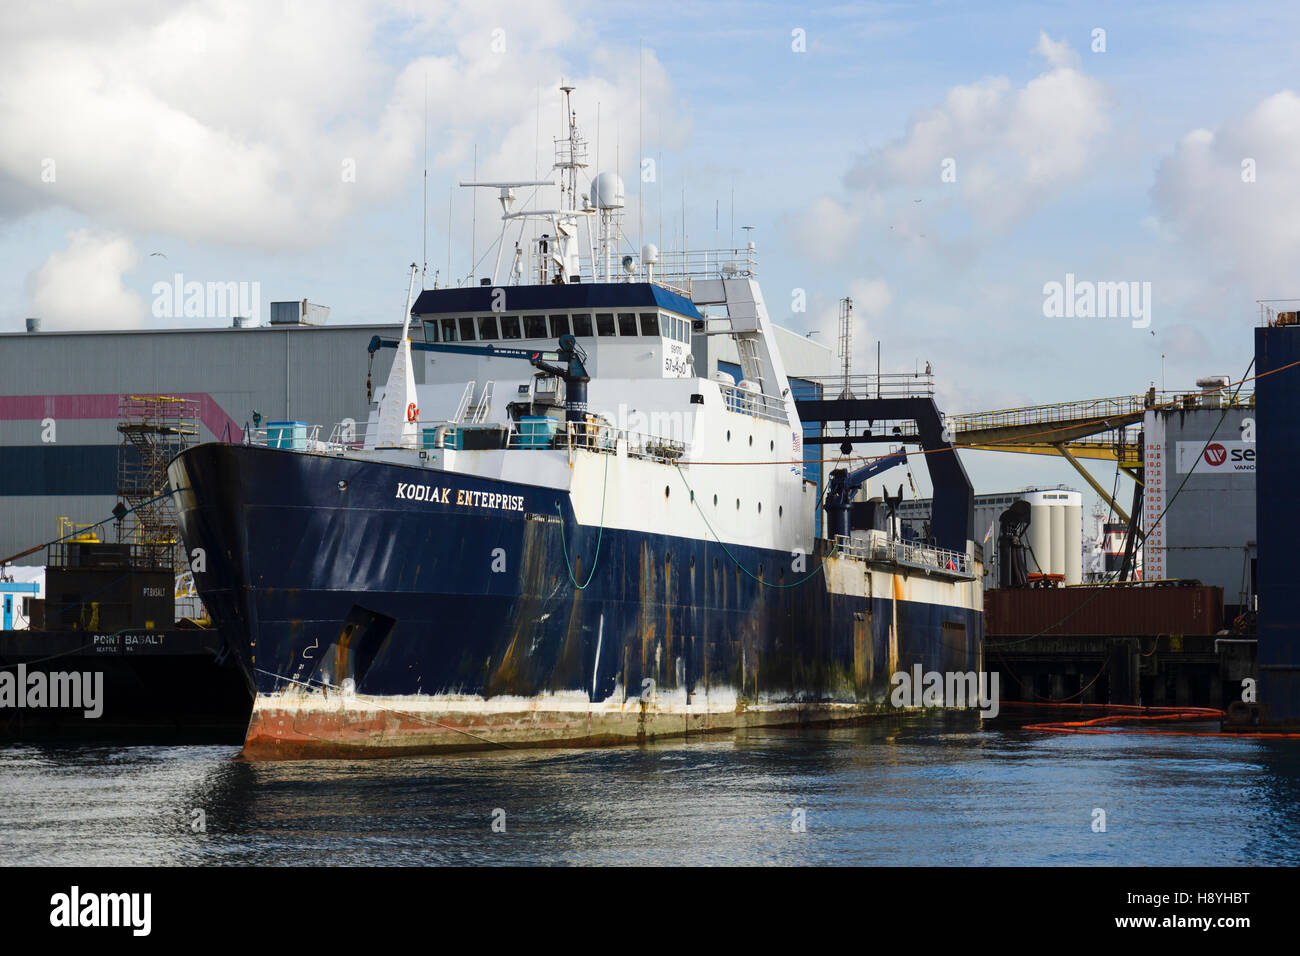 Chalutier de pêche 'Enterprise' Kodiak à Seaspan shipyards à North Vancouver, BC, Canada. Banque D'Images